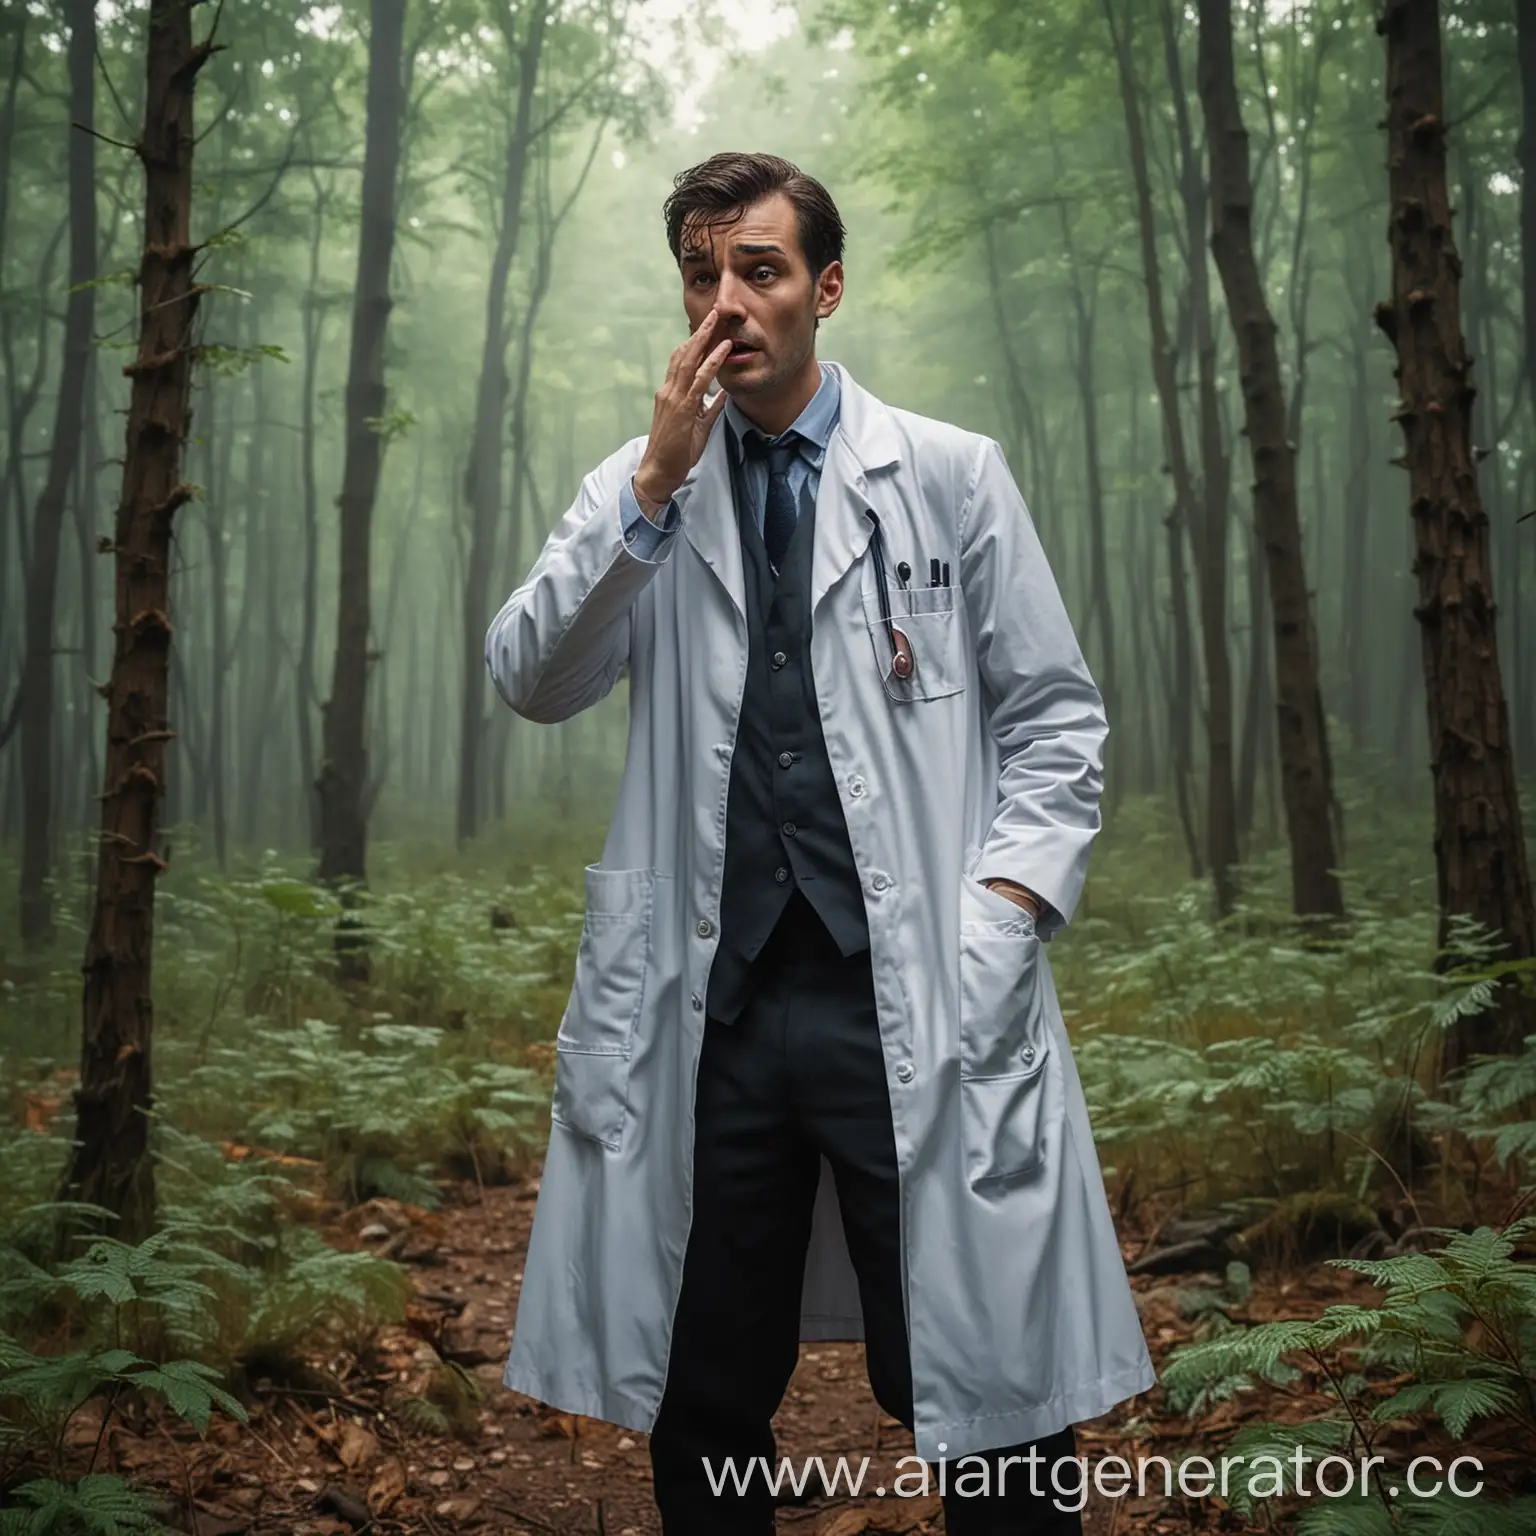 узкий доктор плачет в лесу